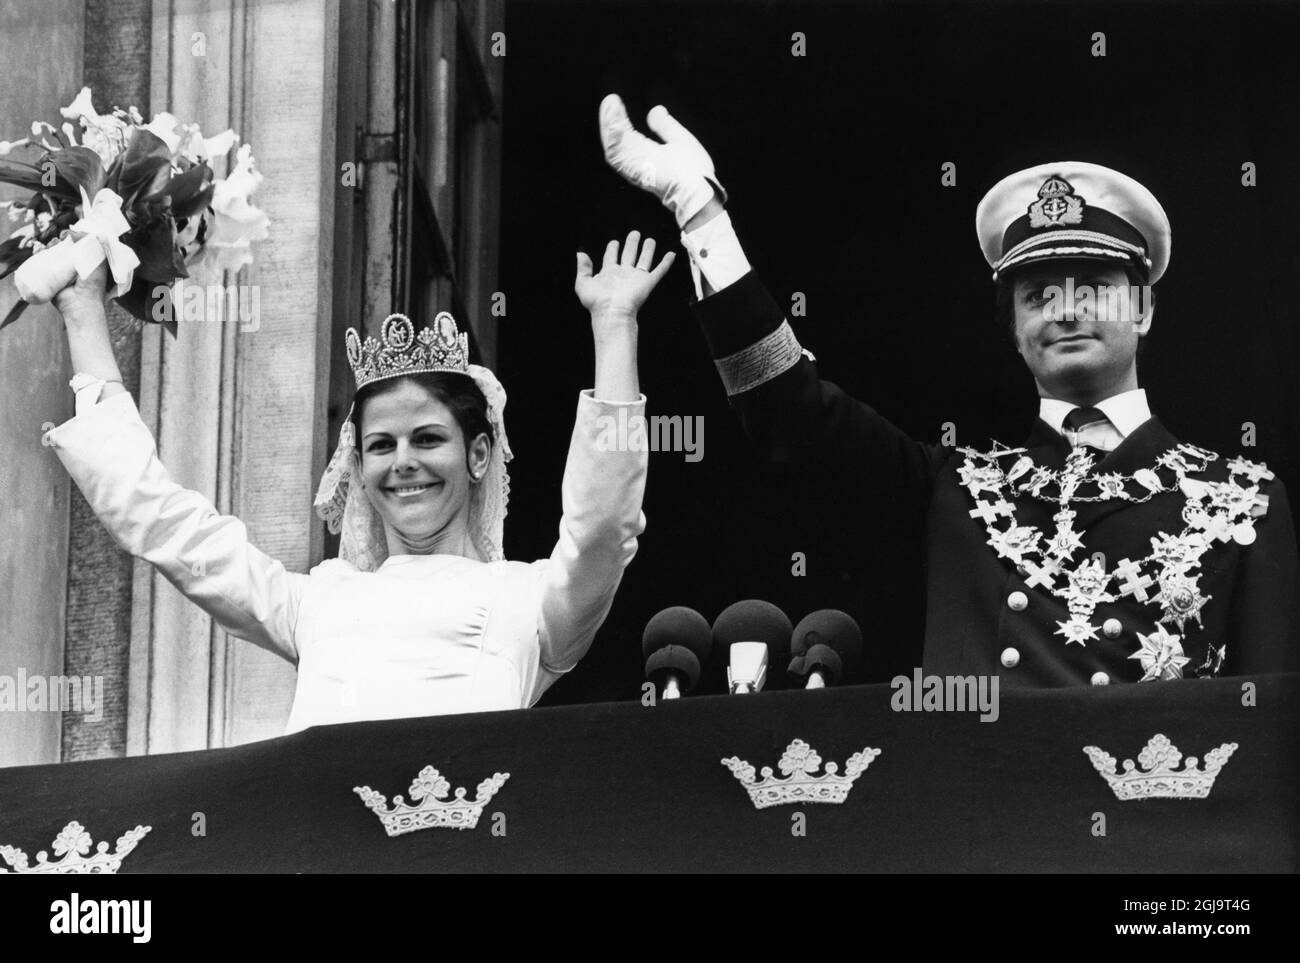 TT-helg-brollop Kronprinsessan Victoria valde samma brollopsdatum som sina  foraldrar - den 19 juni. Ar 1976 trangdes folkmassorna pa gatorna och  hyllade Sveriges nya drottning. Nu 34 ar senare ar det dags for